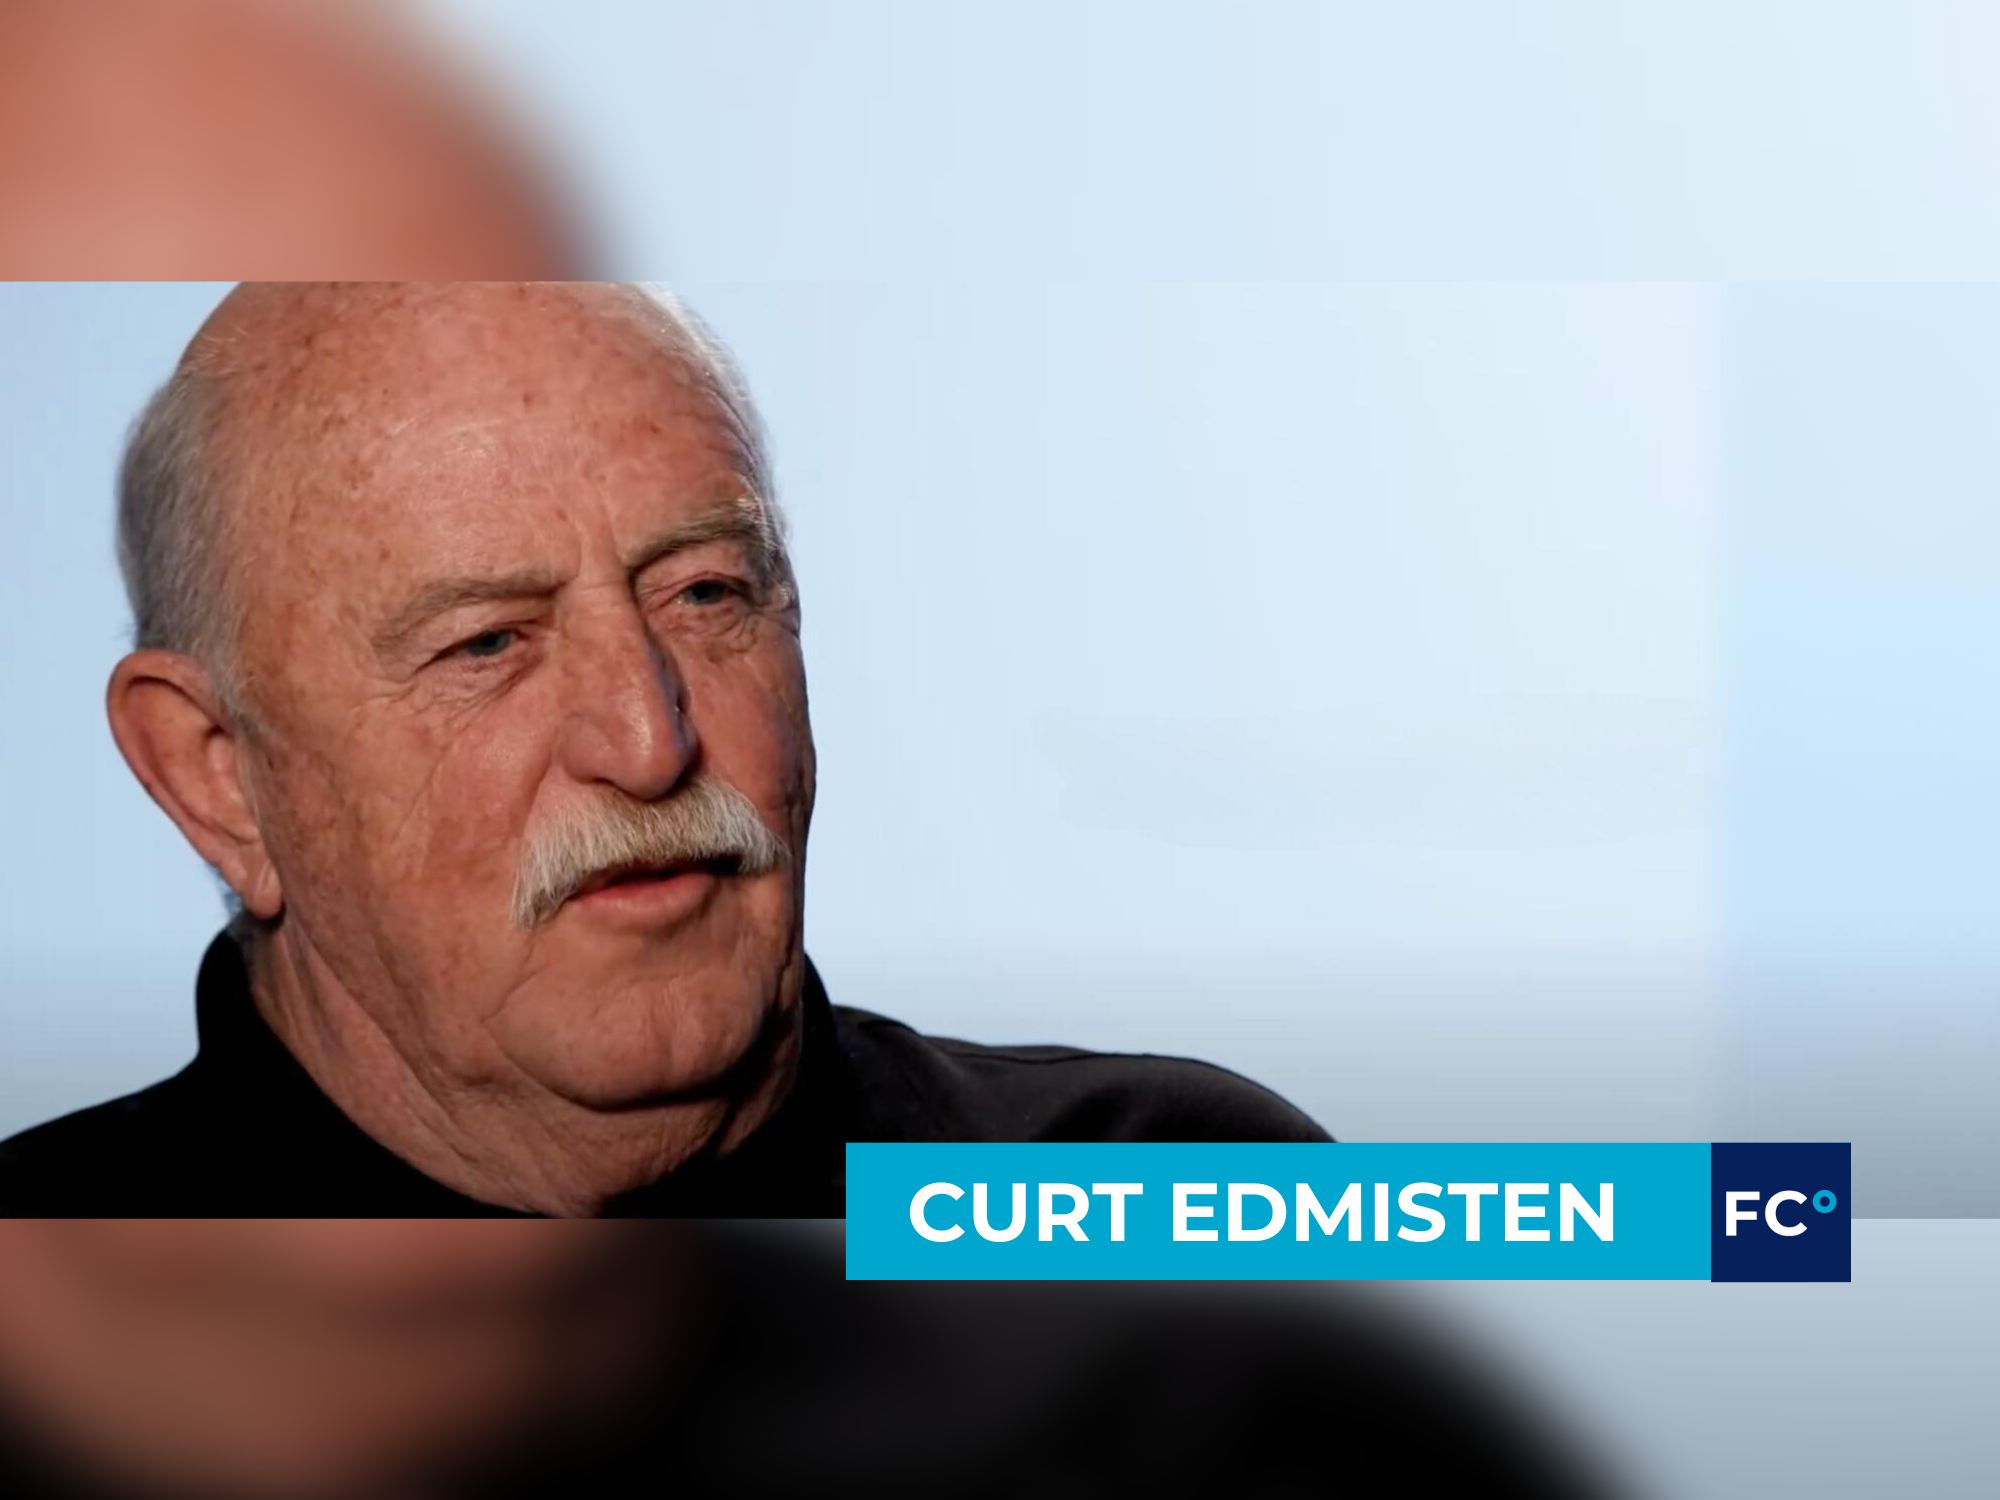 Curt Edmisten